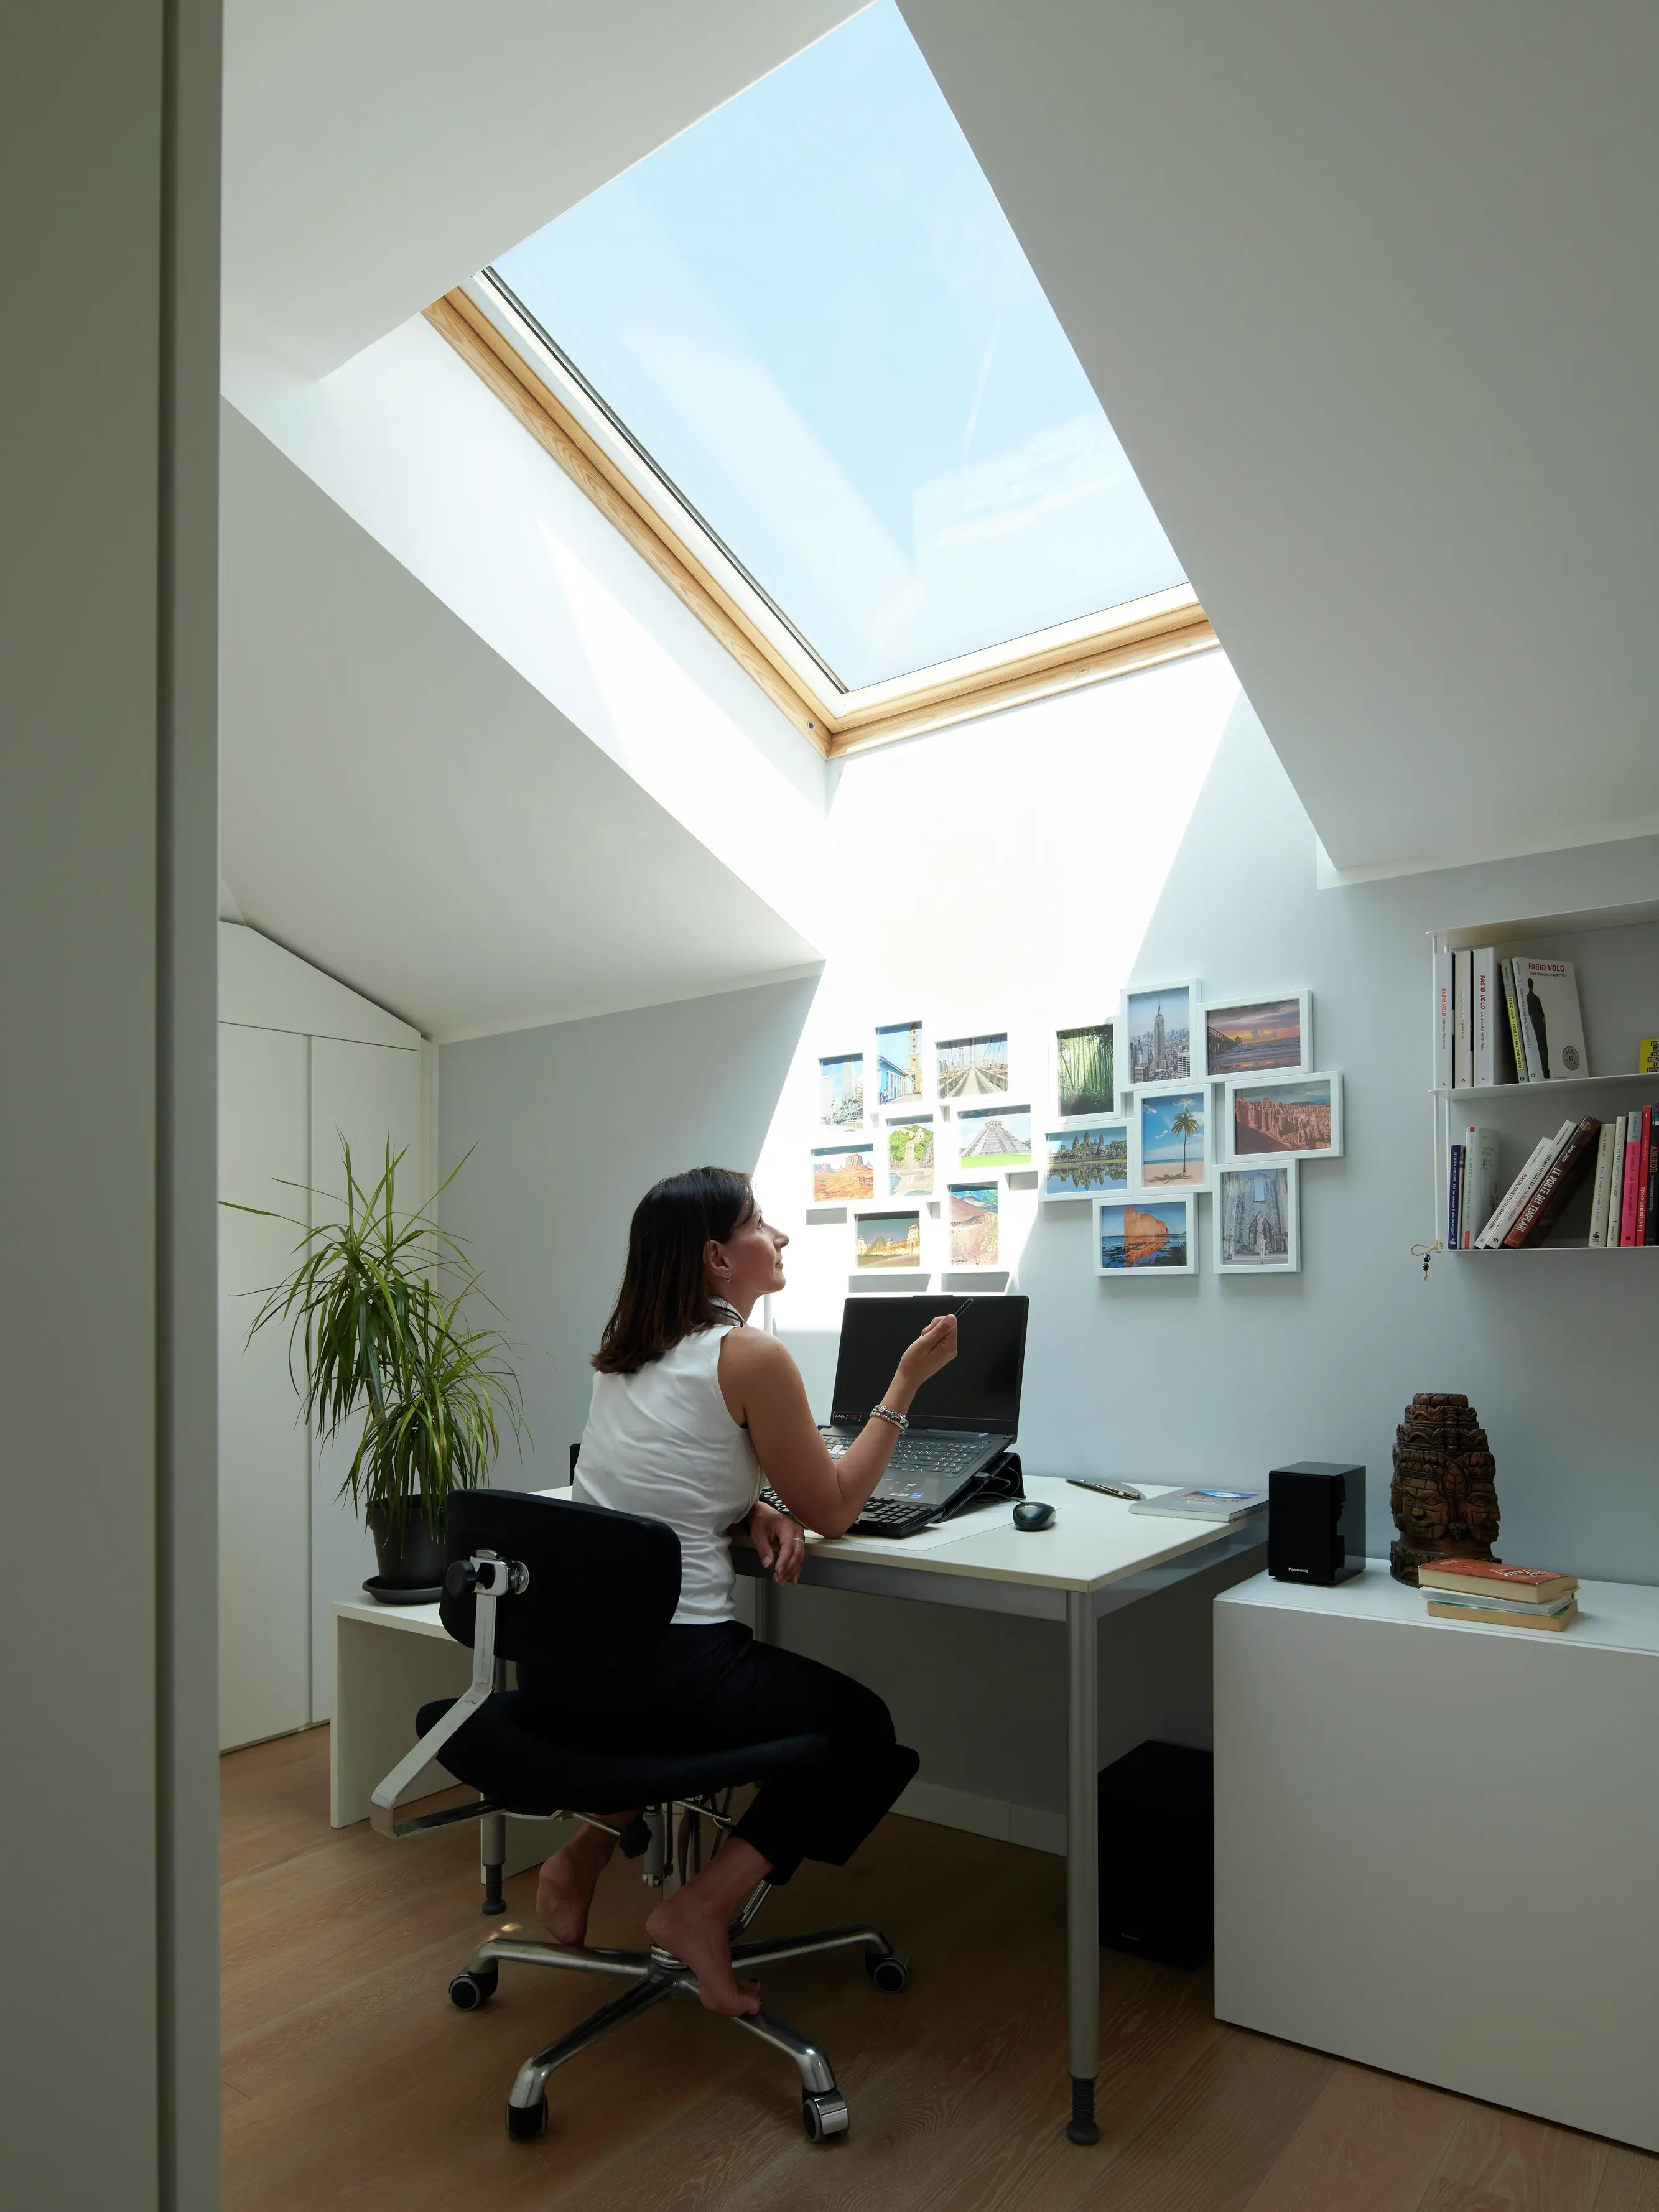 Angolo ufficio in casa con luce naturale proveniente da una finestra per tetti VELUX, piante e una scrivania in legno.